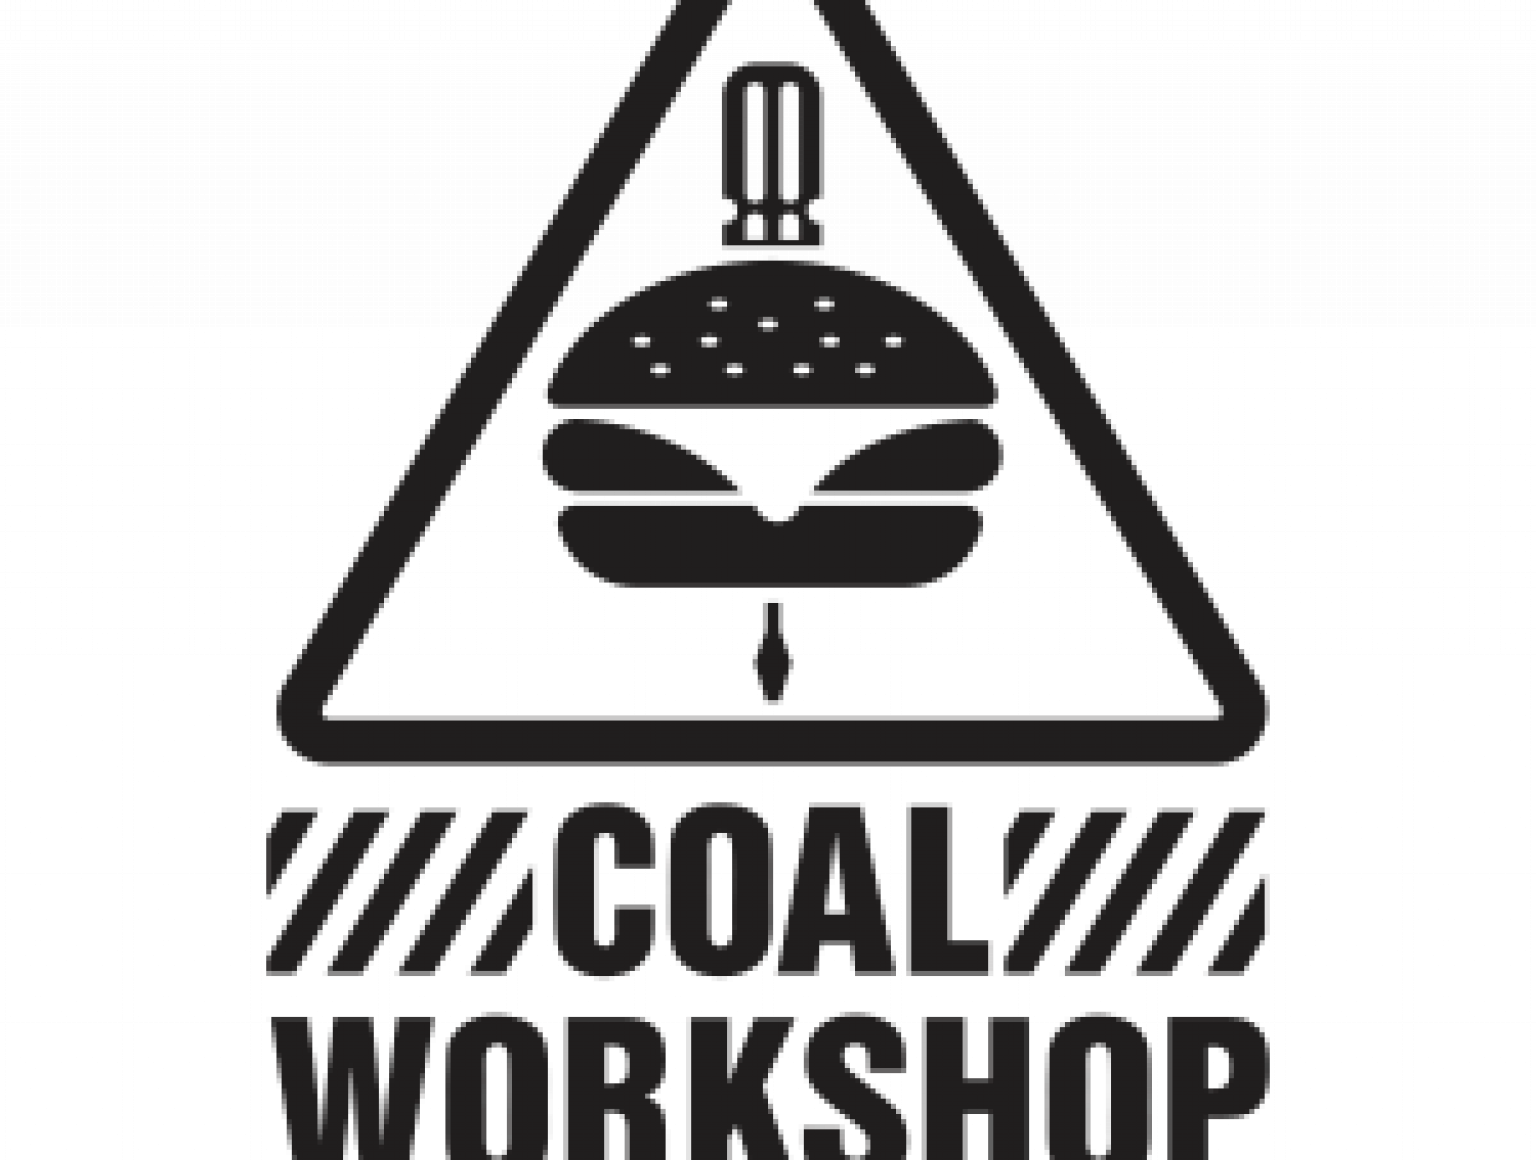 Coalworkshop